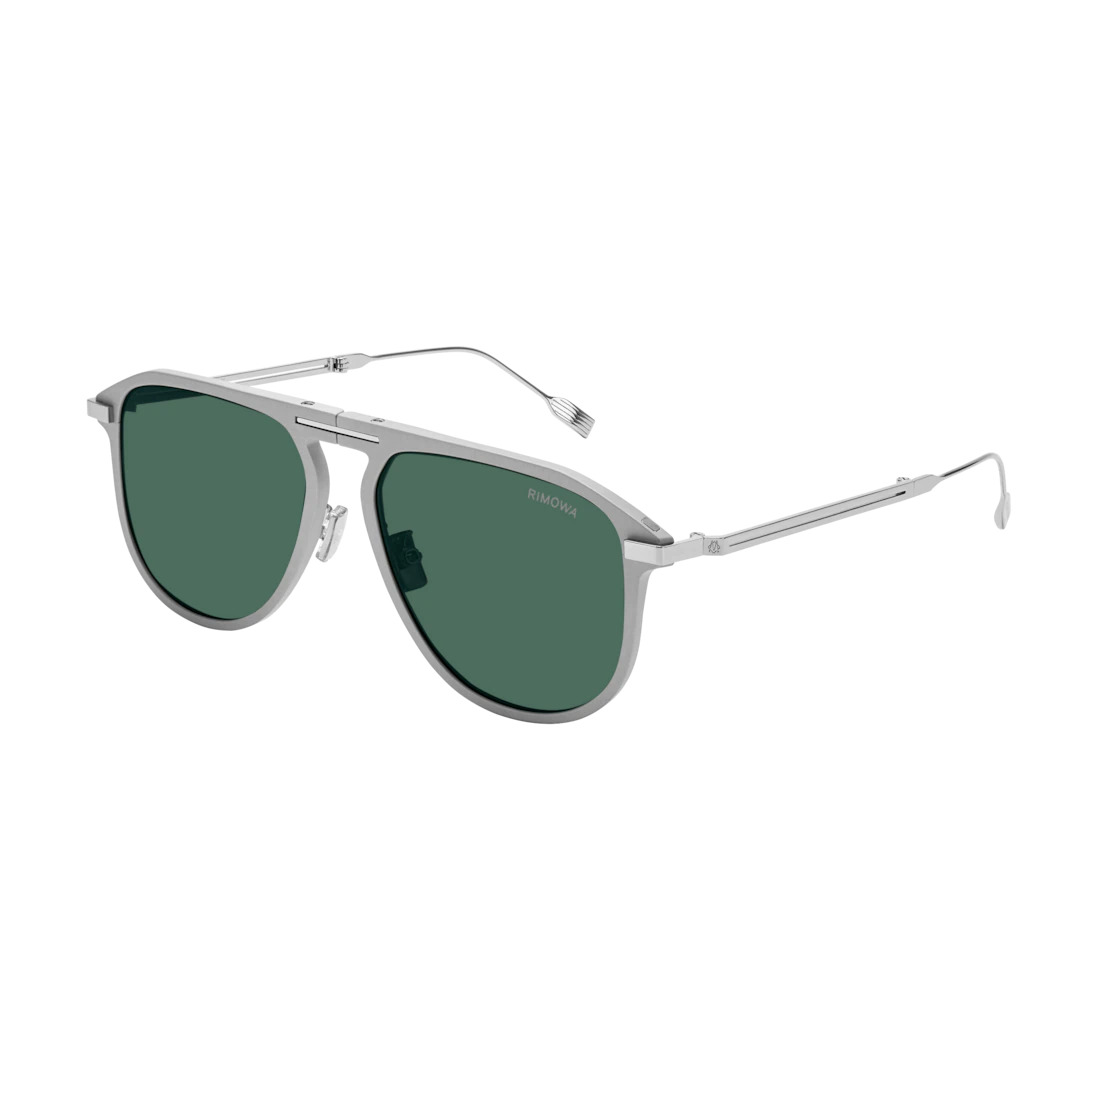 Eyewear Pilot Foldable Matte Silver Sunglasses - 4